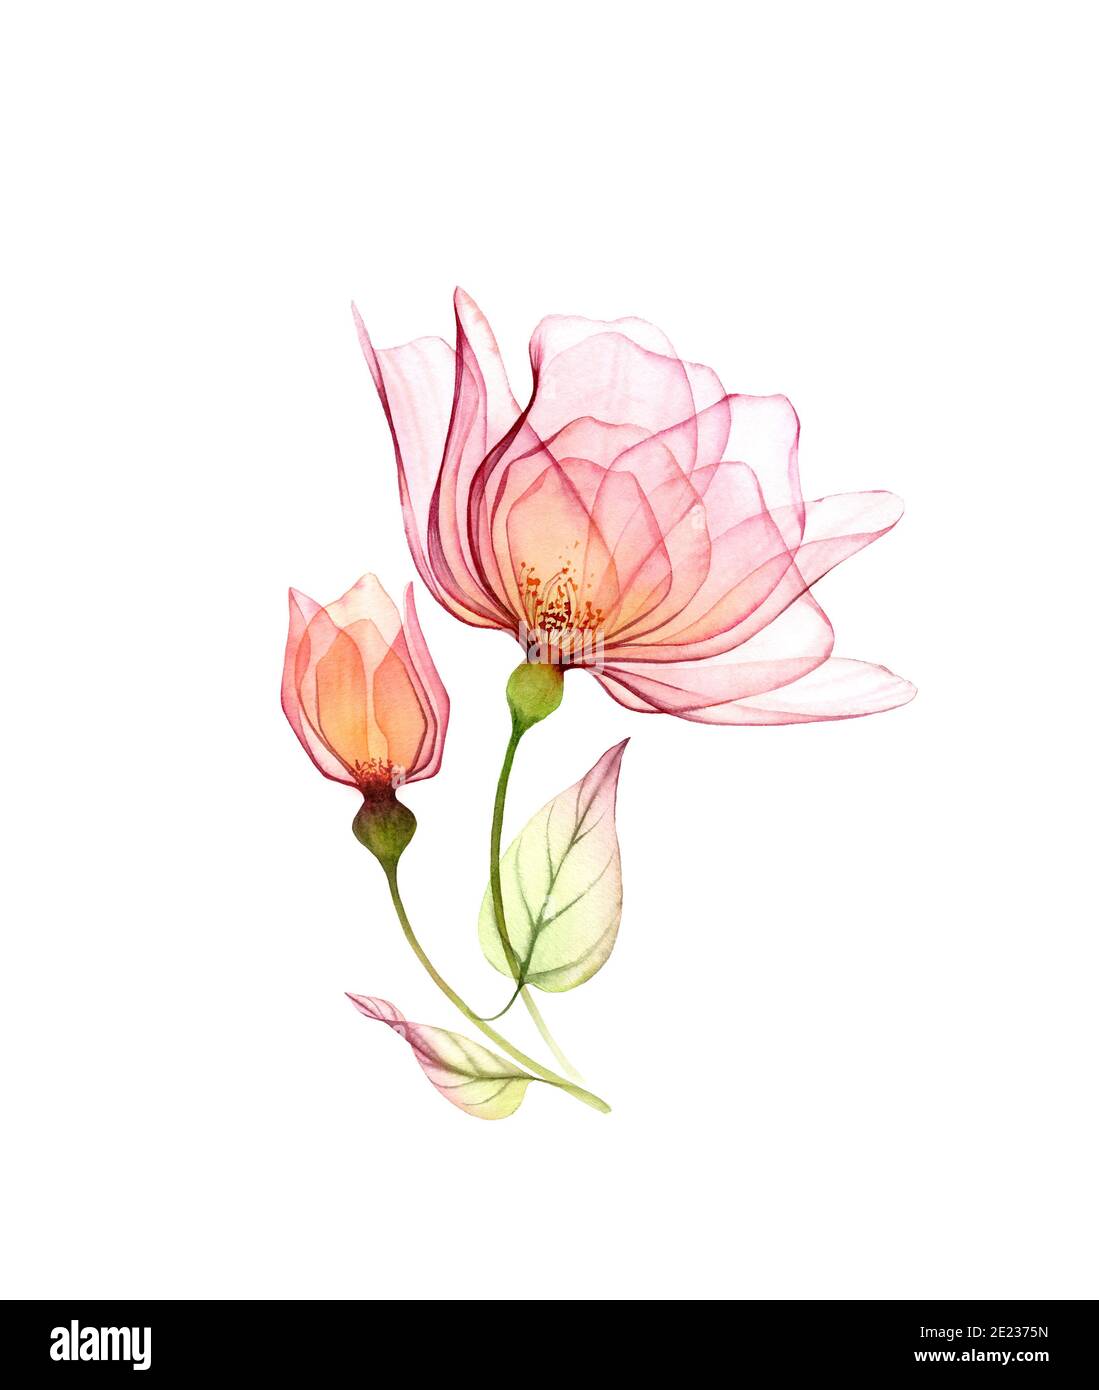 Aquarell Rosenstrauß. Zwei rosa Blüten mit grünen Blättern isoliert auf weiß. Handbemaltes Kunstwerk mit detaillierten Blütenblättern. Botanische Abbildung für Stockfoto